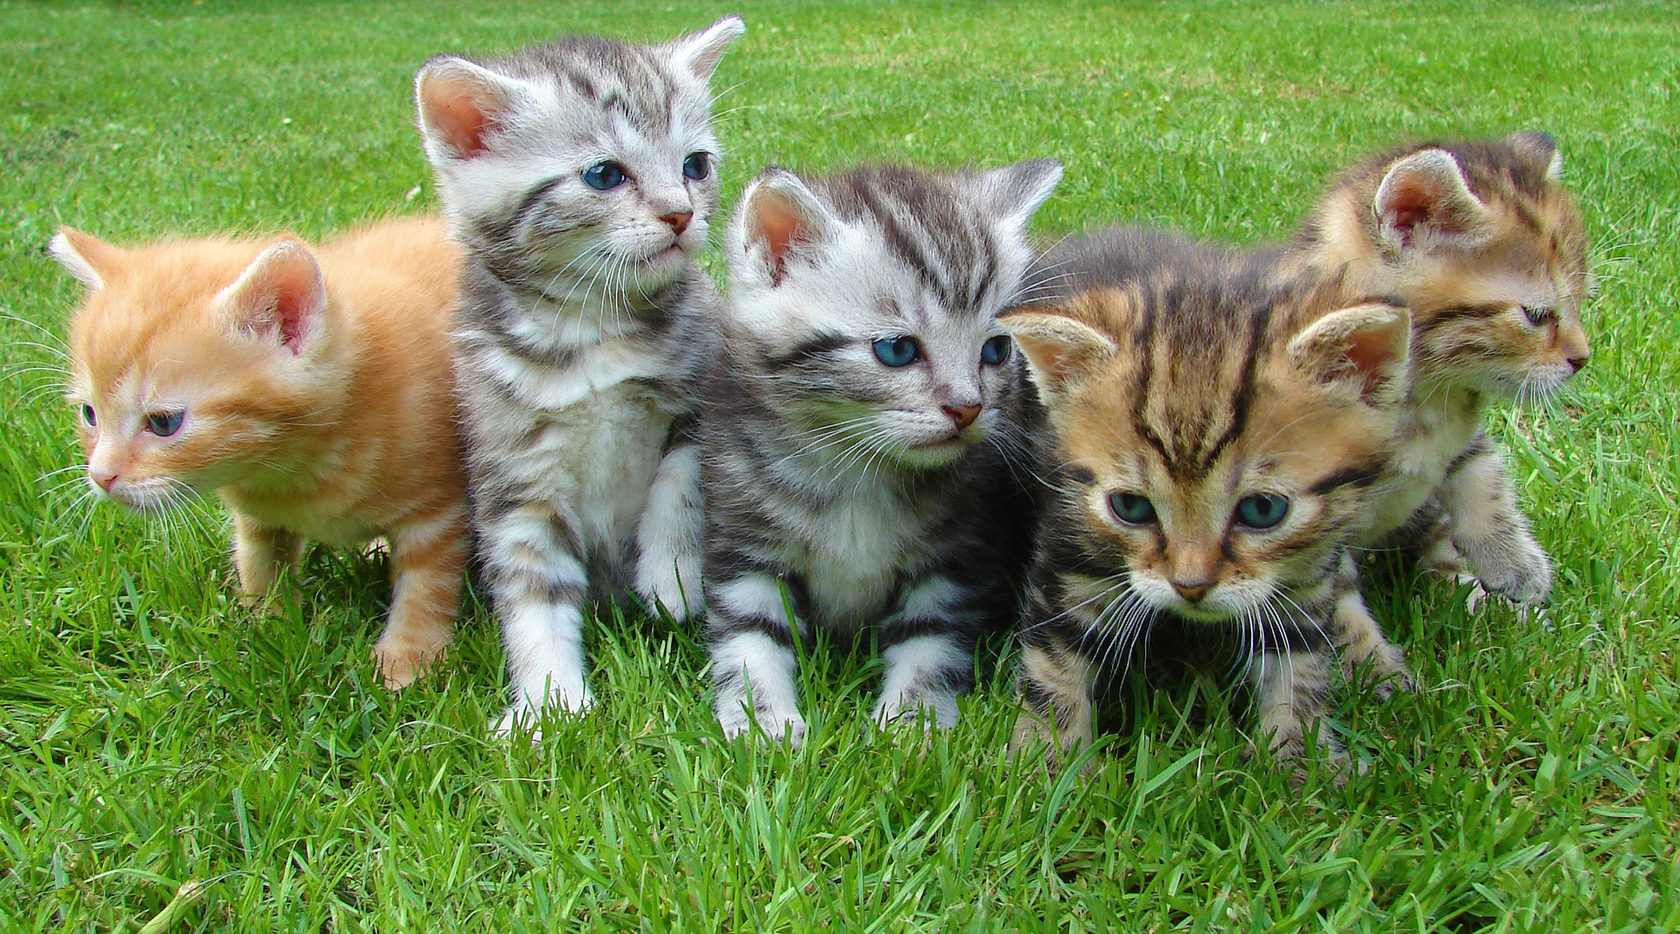 Kittens on the Grass